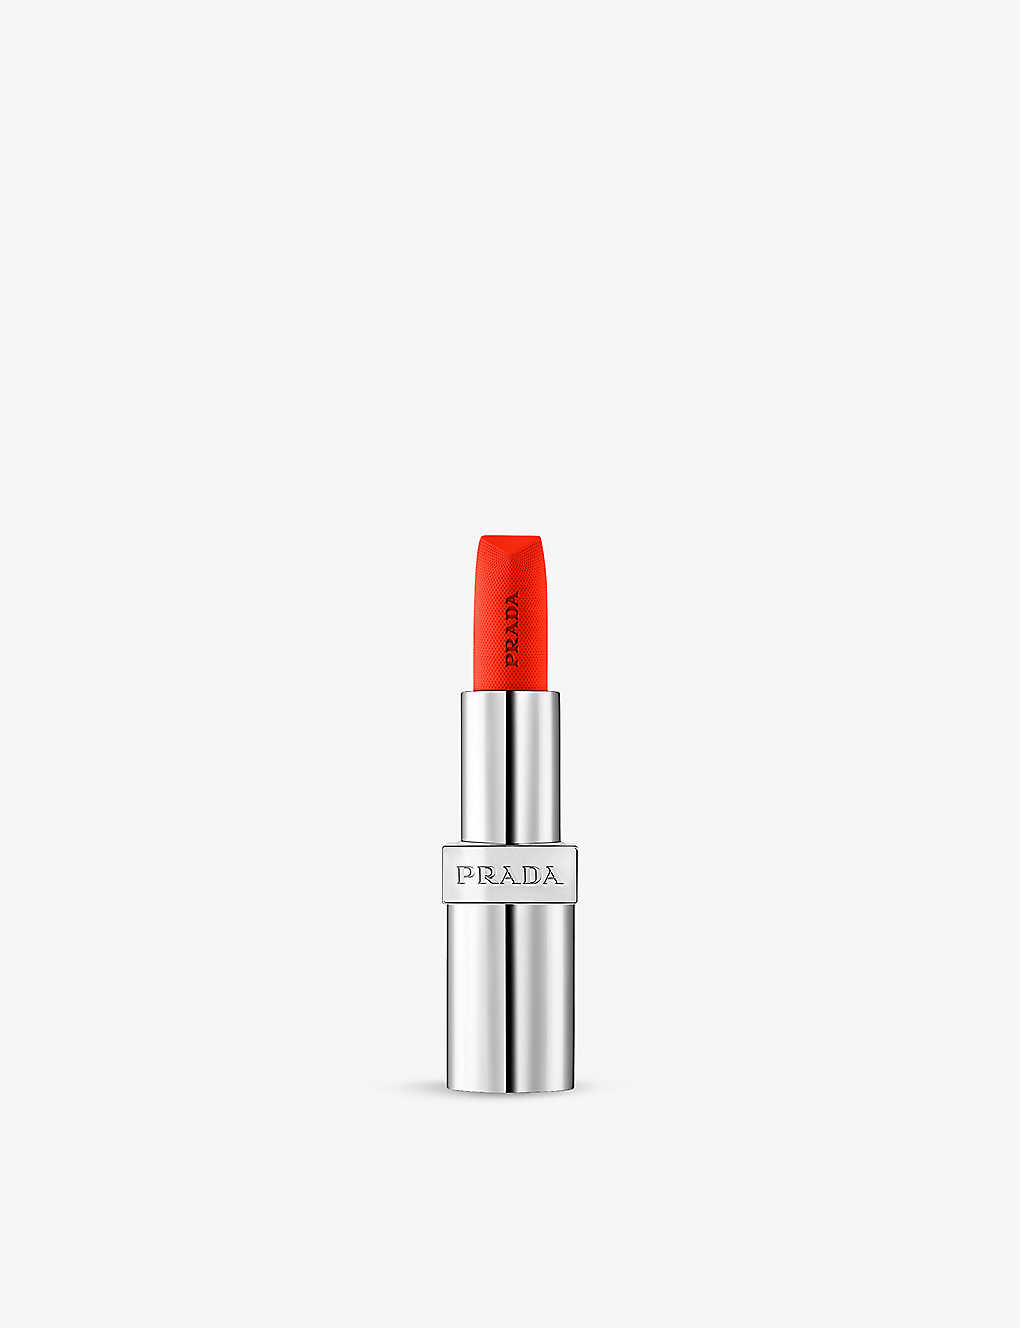 Prada Soft Matte Monochrome Refillable Lipstick 3.8g In Flamingo